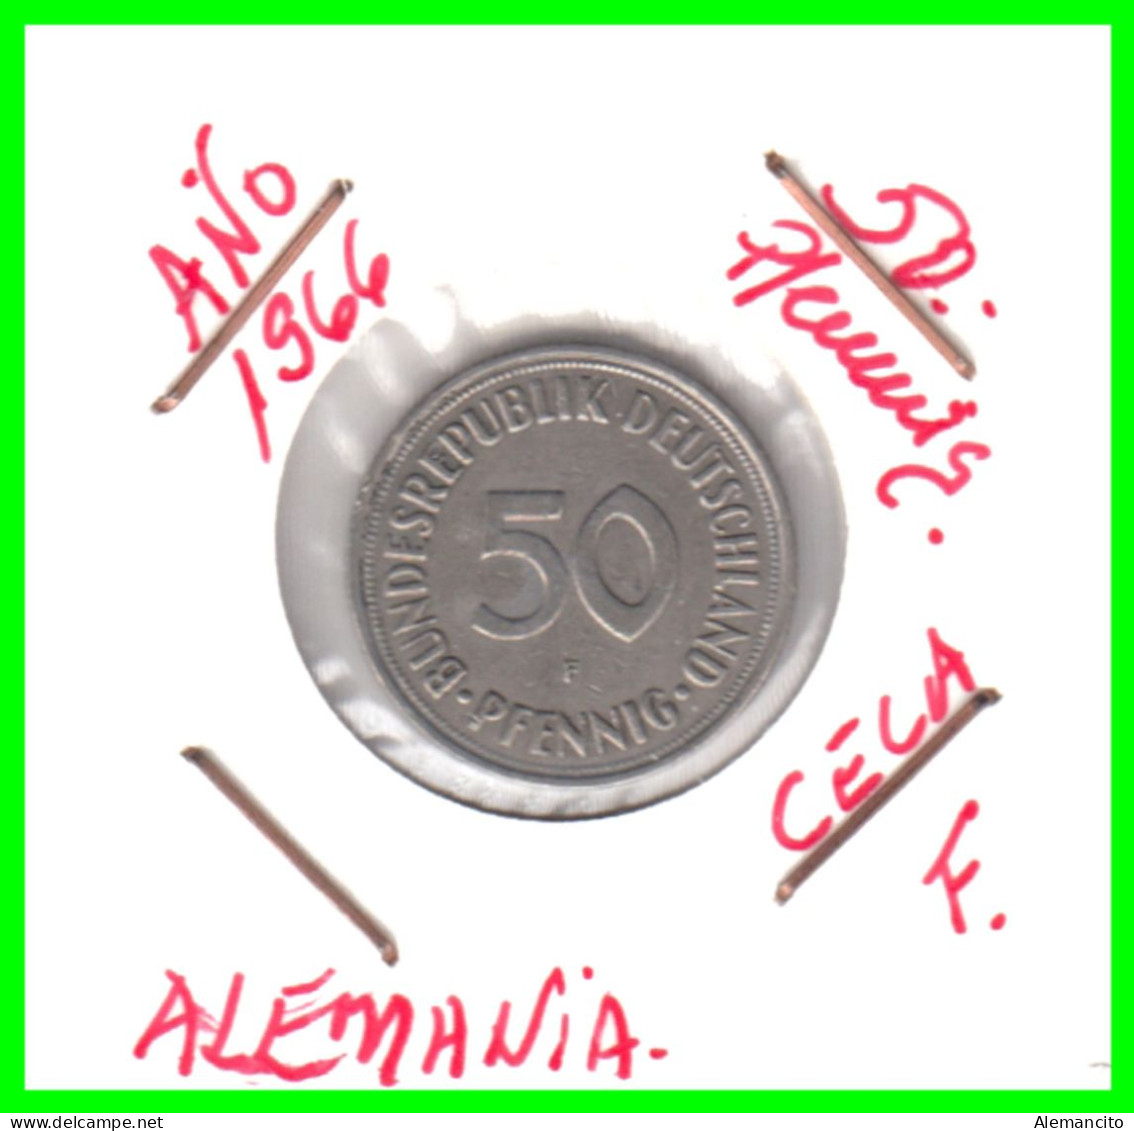 ALEMANIA -DEUTSCHLAND - GERMANY-MONEDA DE LA REPUBLICA FEDERAL DE ALEMANIA DE 50 Pfn-DEL AÑO - 1950 CECA - F - STUTTGART - 50 Pfennig